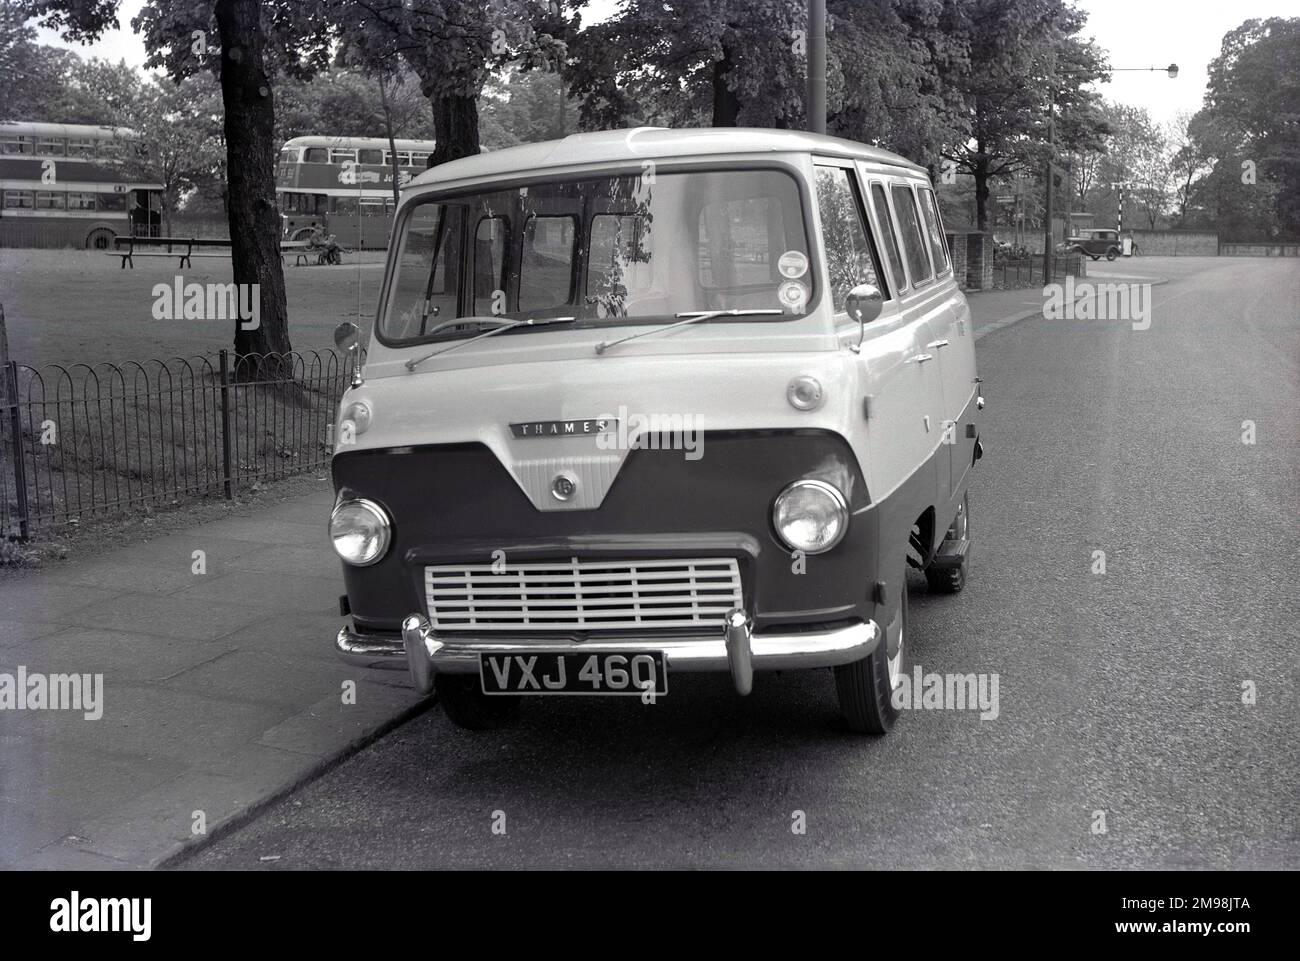 1957, historique, un Ford Thames 15 cwt 400E minibus ou petit porte-personnes, garés près de Wilmslow Rd, Parrs Wood, Didsbury, Manchester, Angleterre, ROYAUME-UNI. Le 400E était un véhicule commercial léger fabriqué à Dagenham, en Grande-Bretagne par Ford UK de 1957 à 1965. Vu à l'avant, au-dessus de l'emblème circulaire avec la classe de capacité du véhicule (15 tonneht) est le nom Thames. Banque D'Images